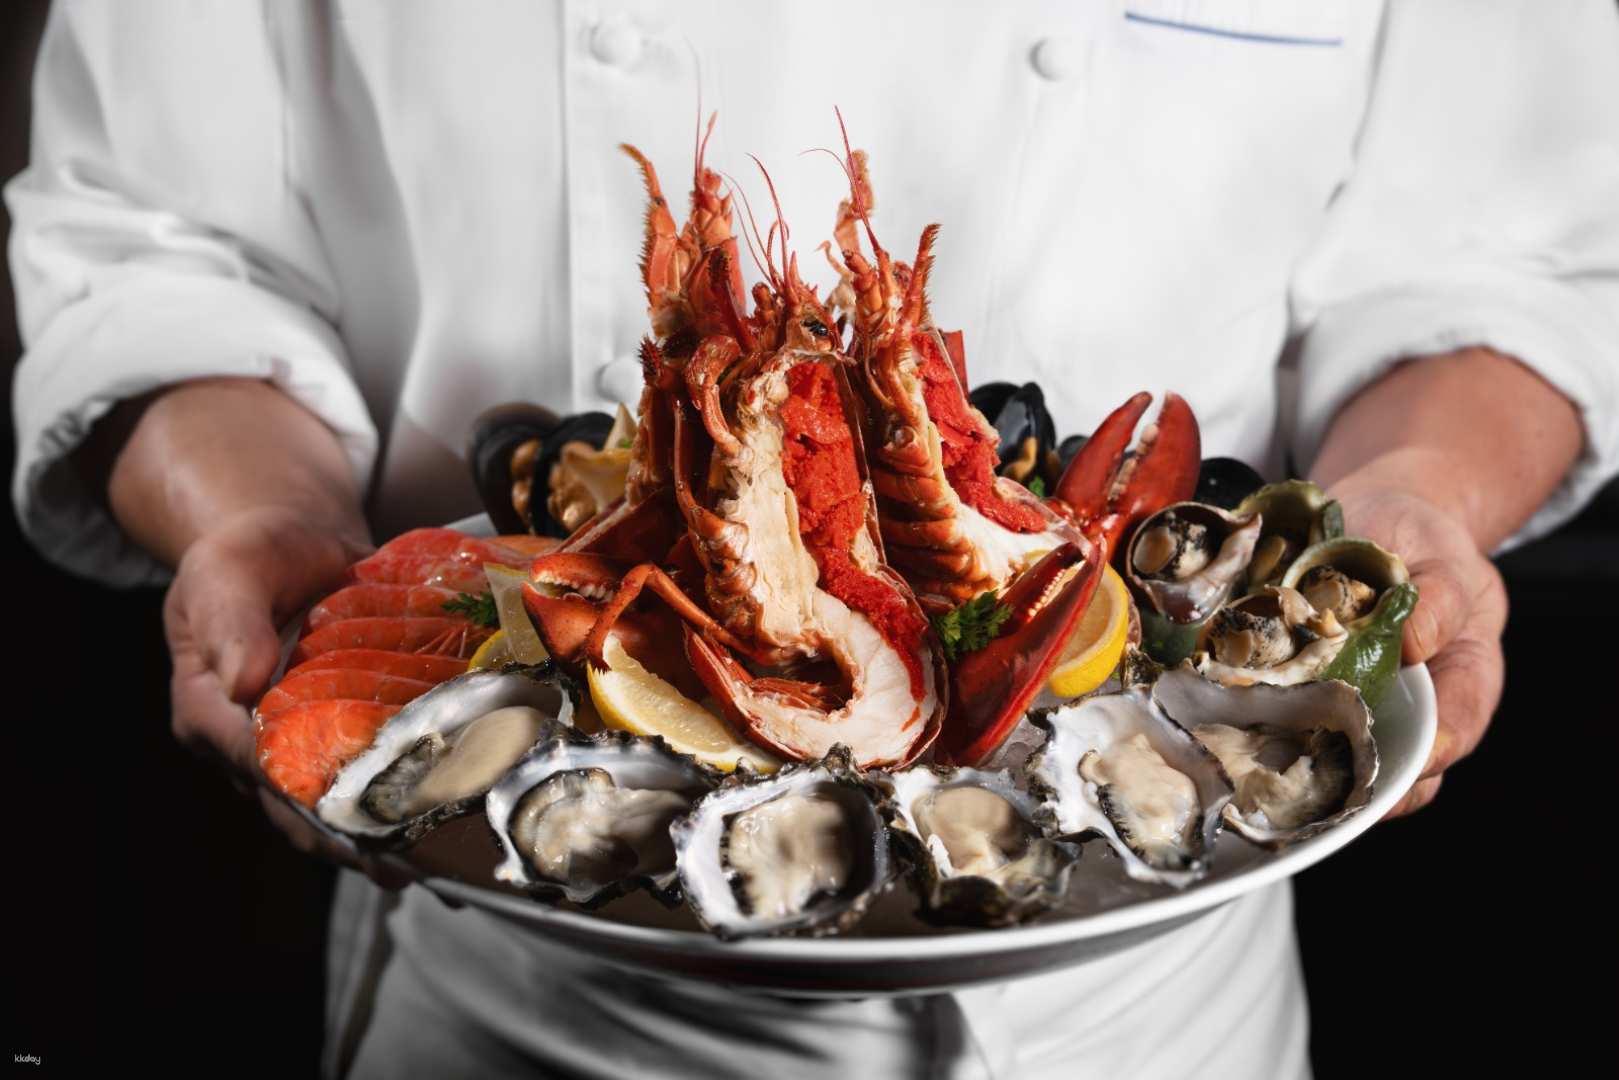 香港-朗廷酒店 Bostonian Seafood & Grill| 任食海鮮&週末節日早午餐&三道菜行政午餐&嘗味套餐